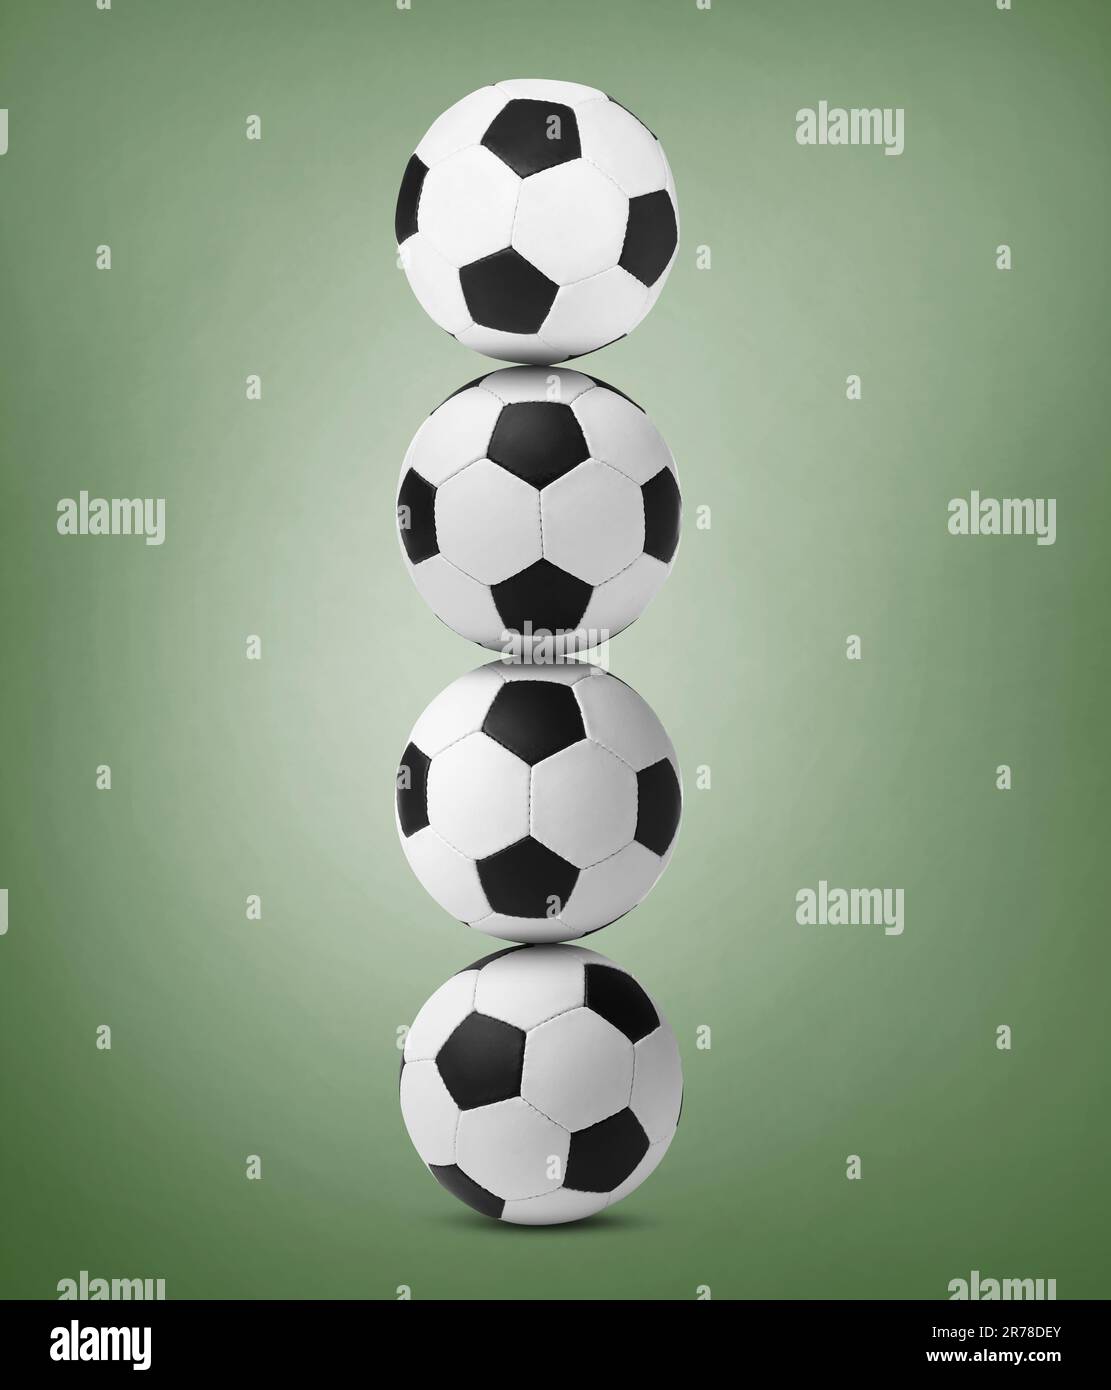 Pile de ballons de football sur fond vert pâle Banque D'Images